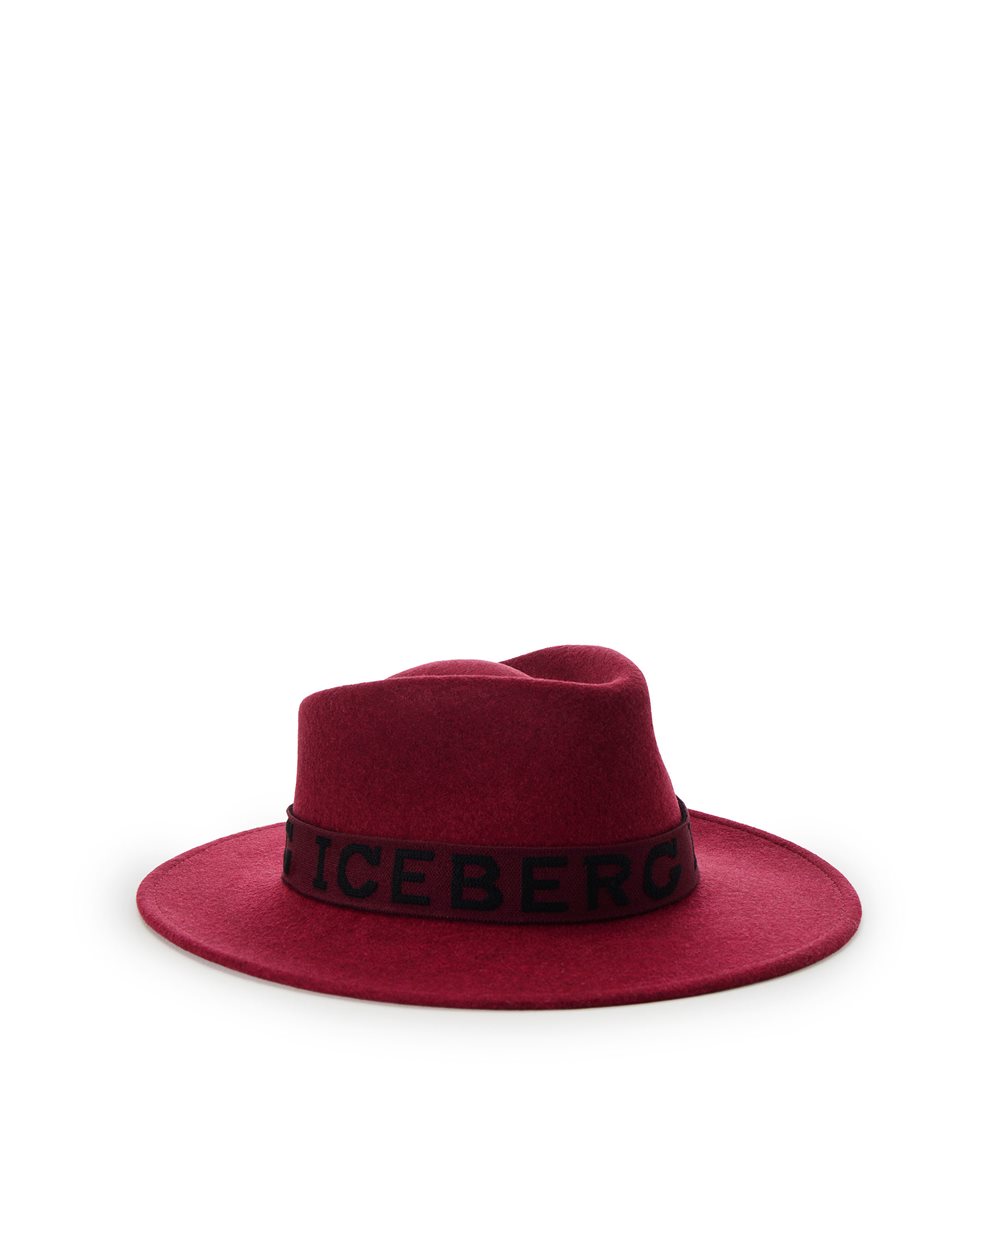 Felt Rancher hat - carosello gift guide donna | Iceberg - Official Website